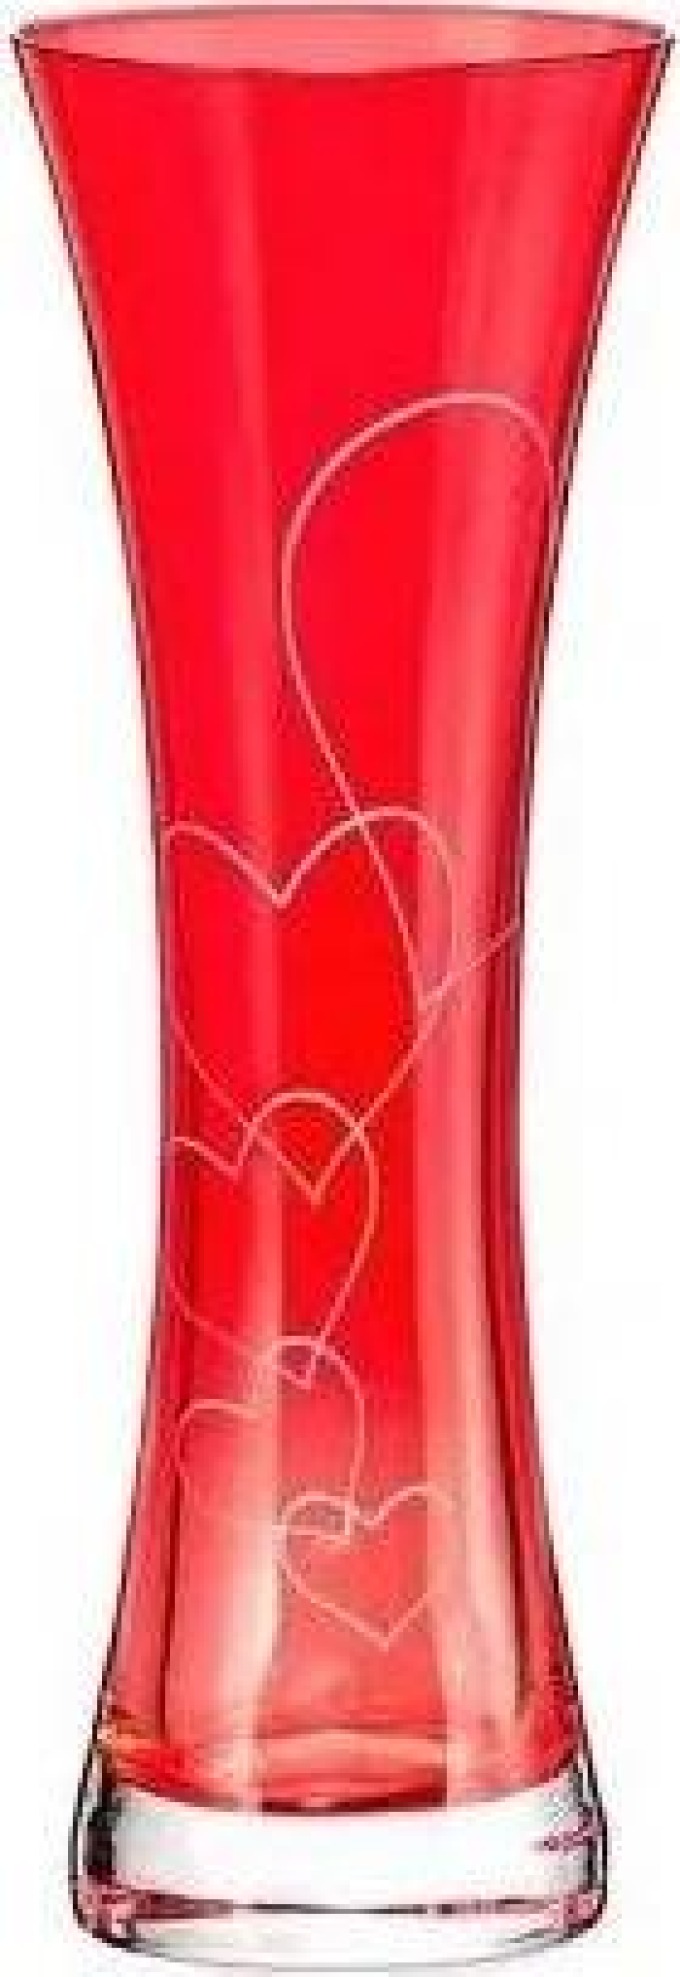 Crystalex červená skleněná váza Love 19,5 cm 1KS